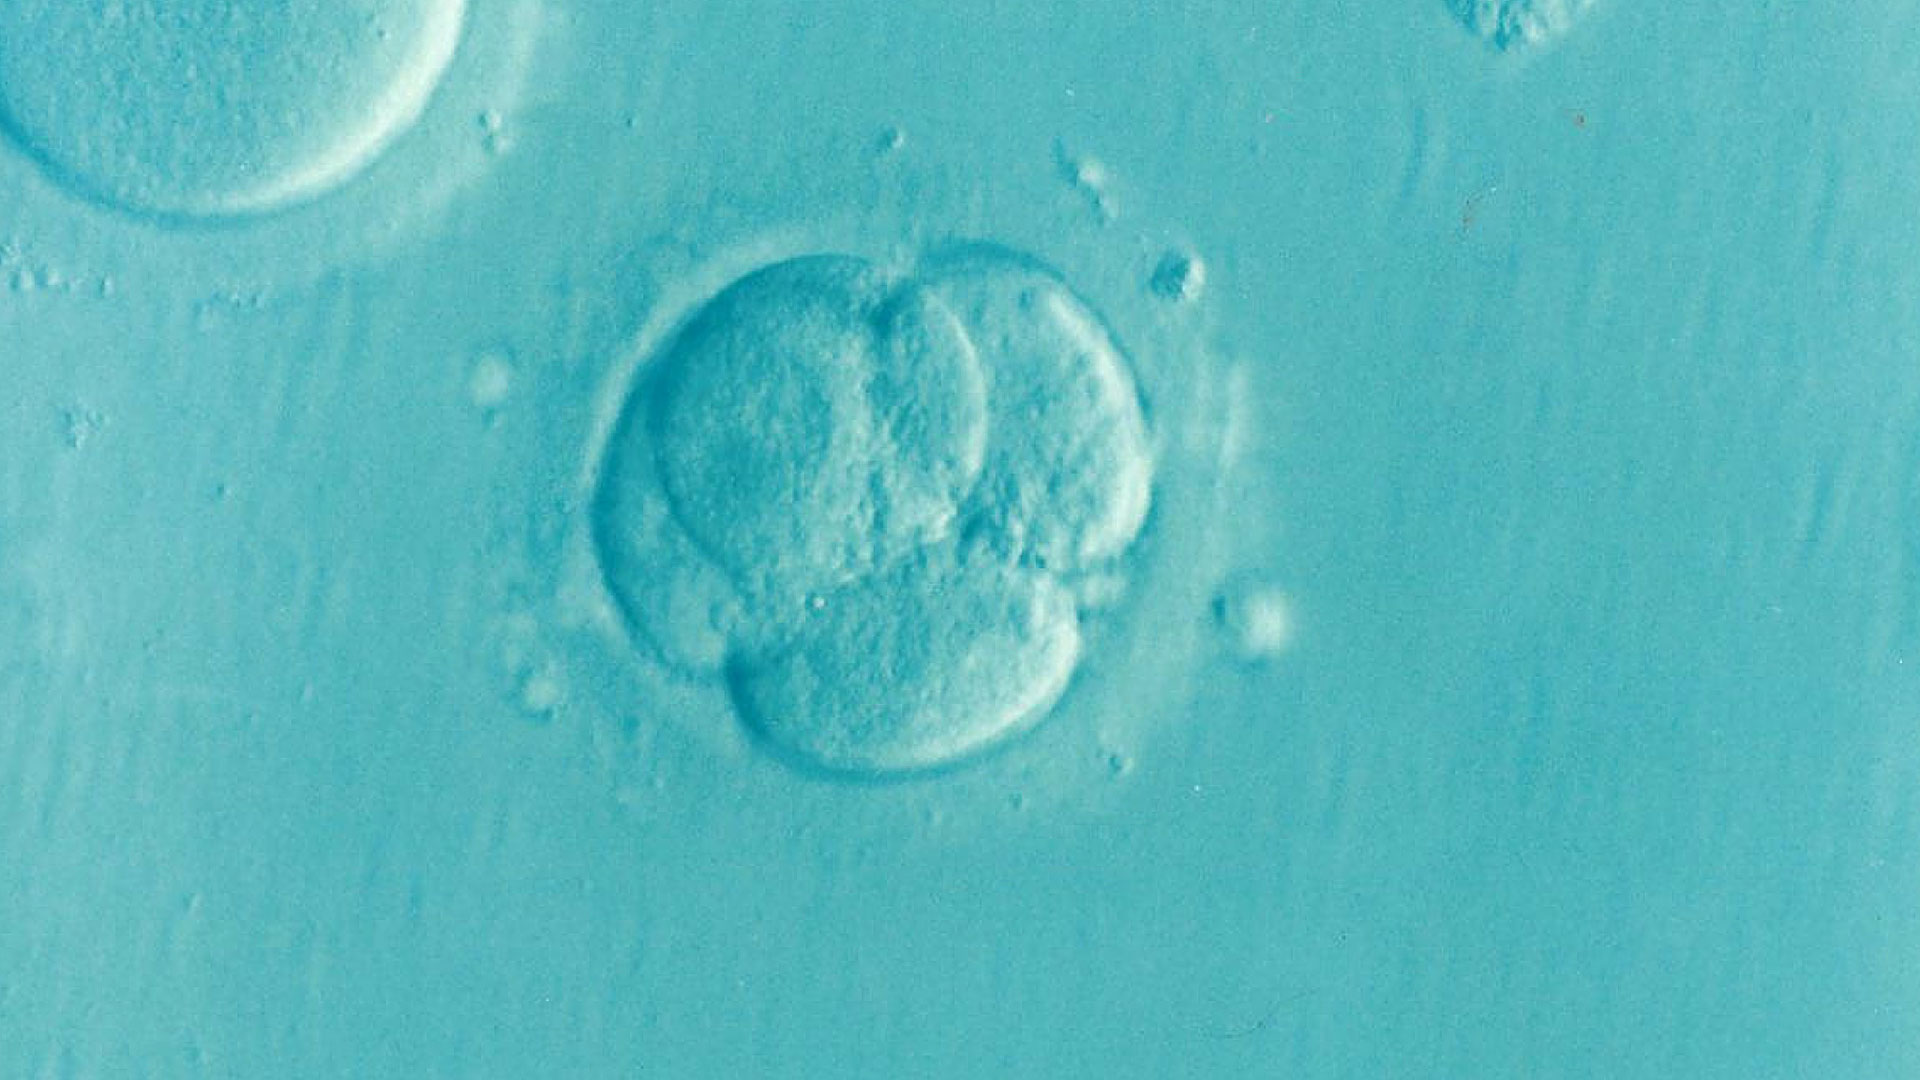 human embryo at 4 days